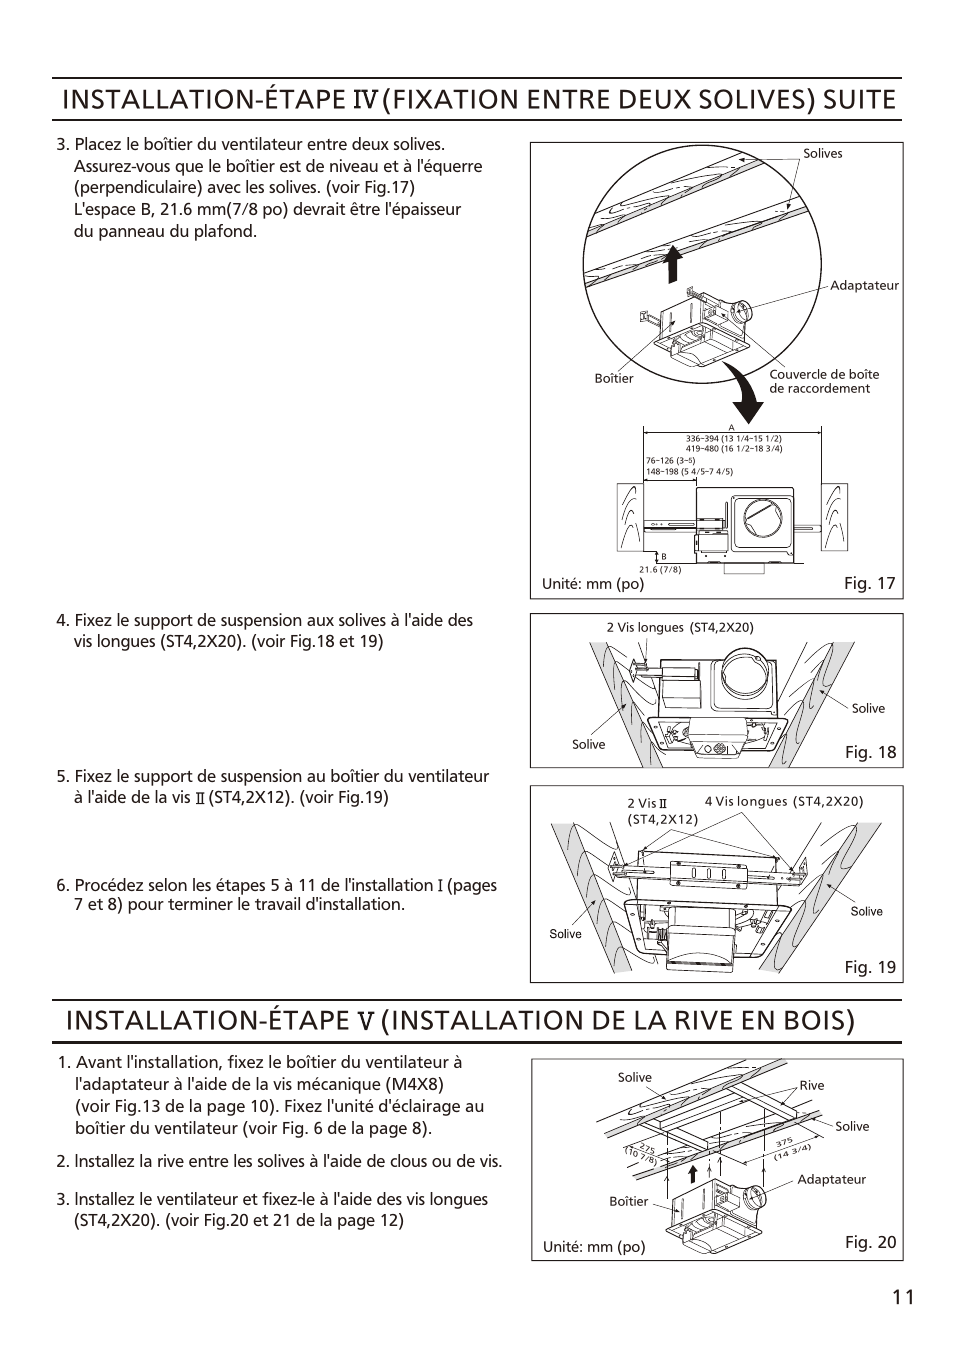 页 11, Installation-étape, Installation de la rive en bois) | Panasonic FV-08VFL3 Manuel d'utilisation | Page 11 / 16